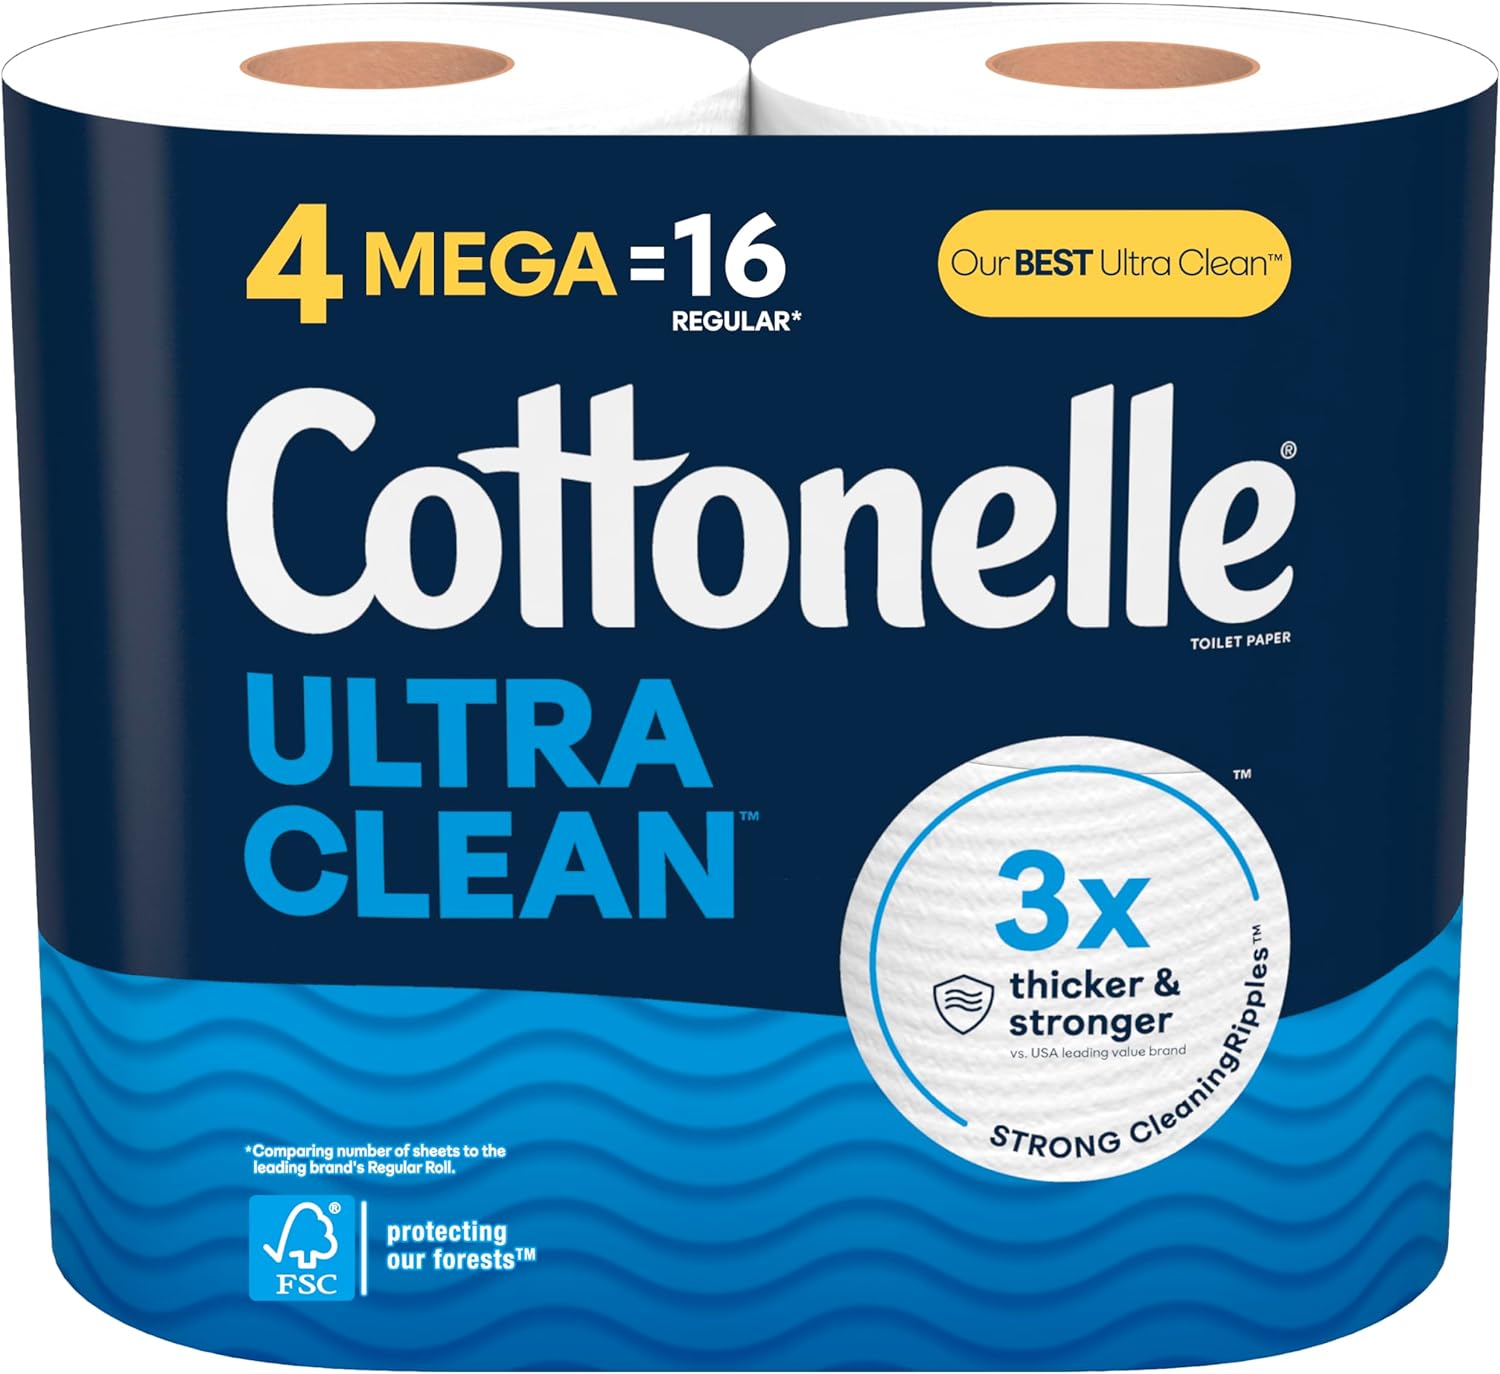 [S&S] $4: 4 Mega Rolls Cottonelle Ultra Clean Toilet Paper at Amazon